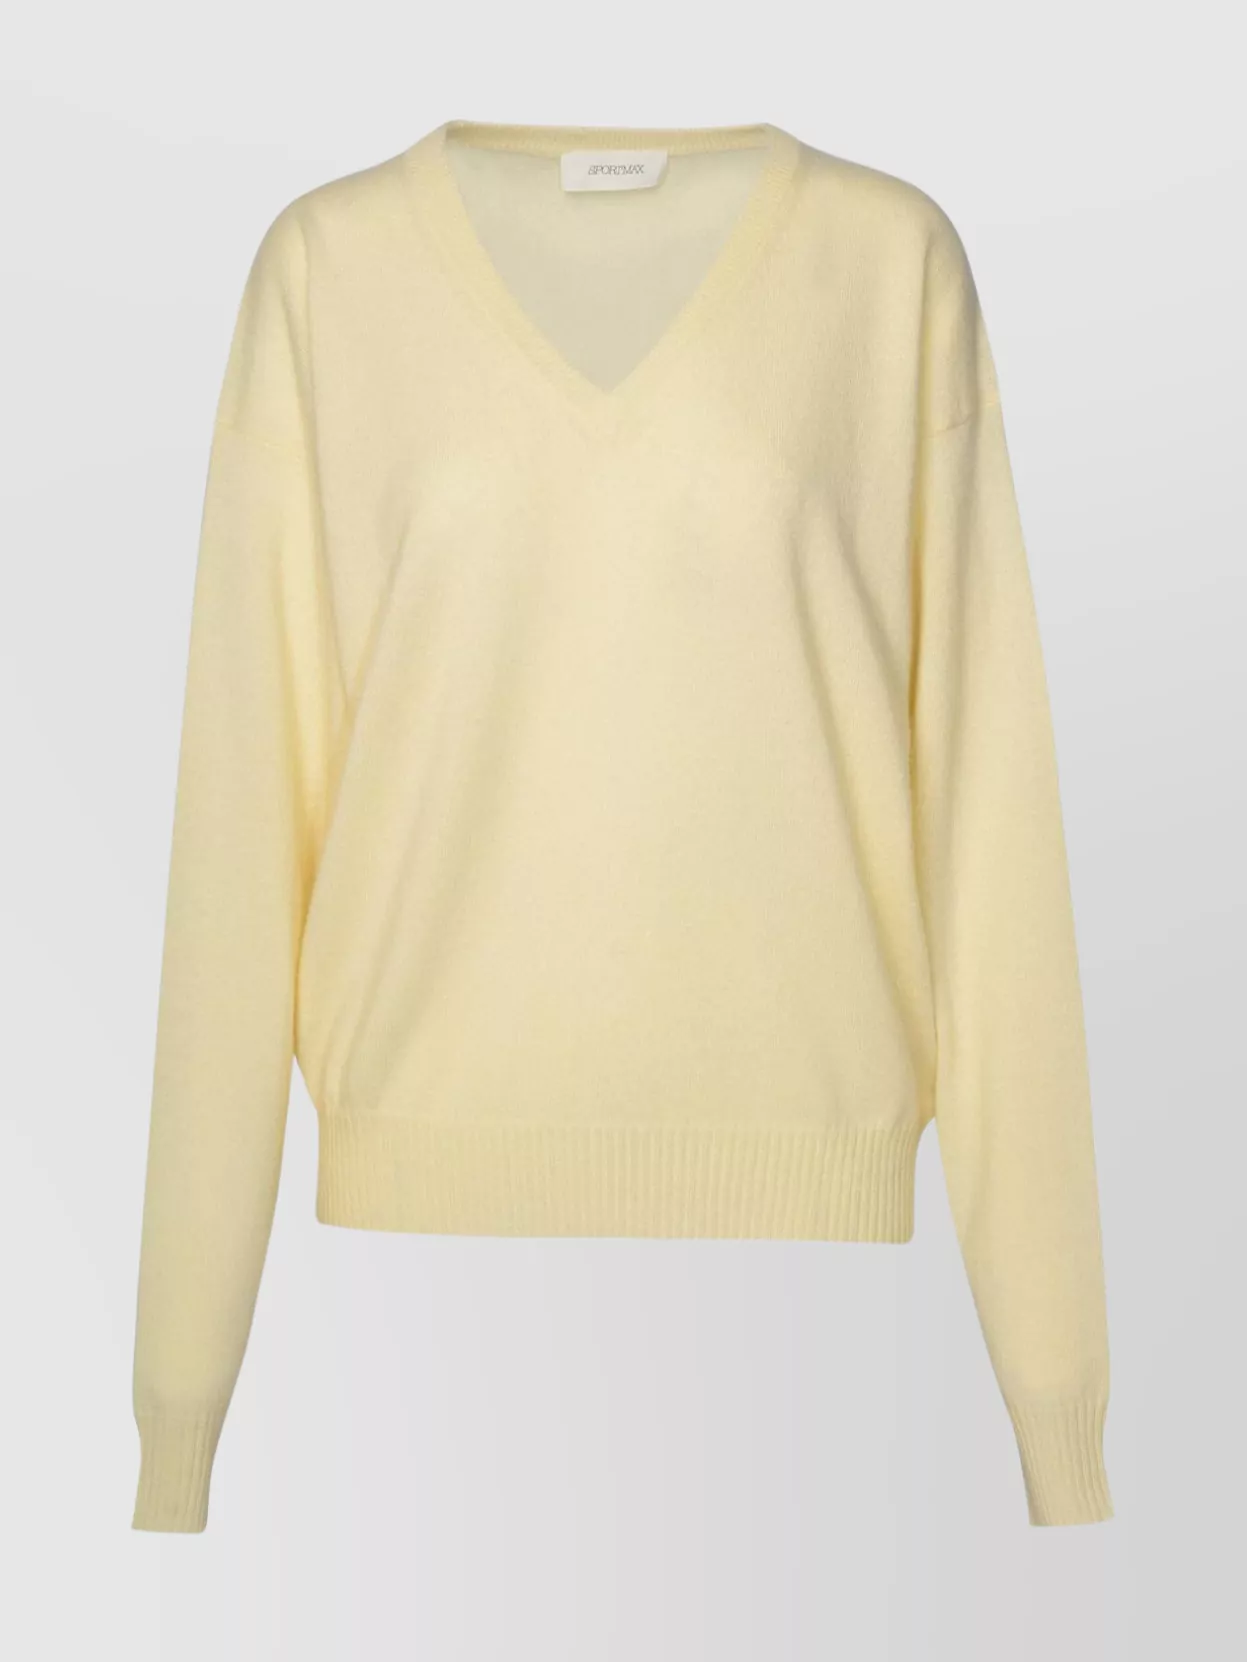 Shop Sportmax V-neck Wool Blend Sweater